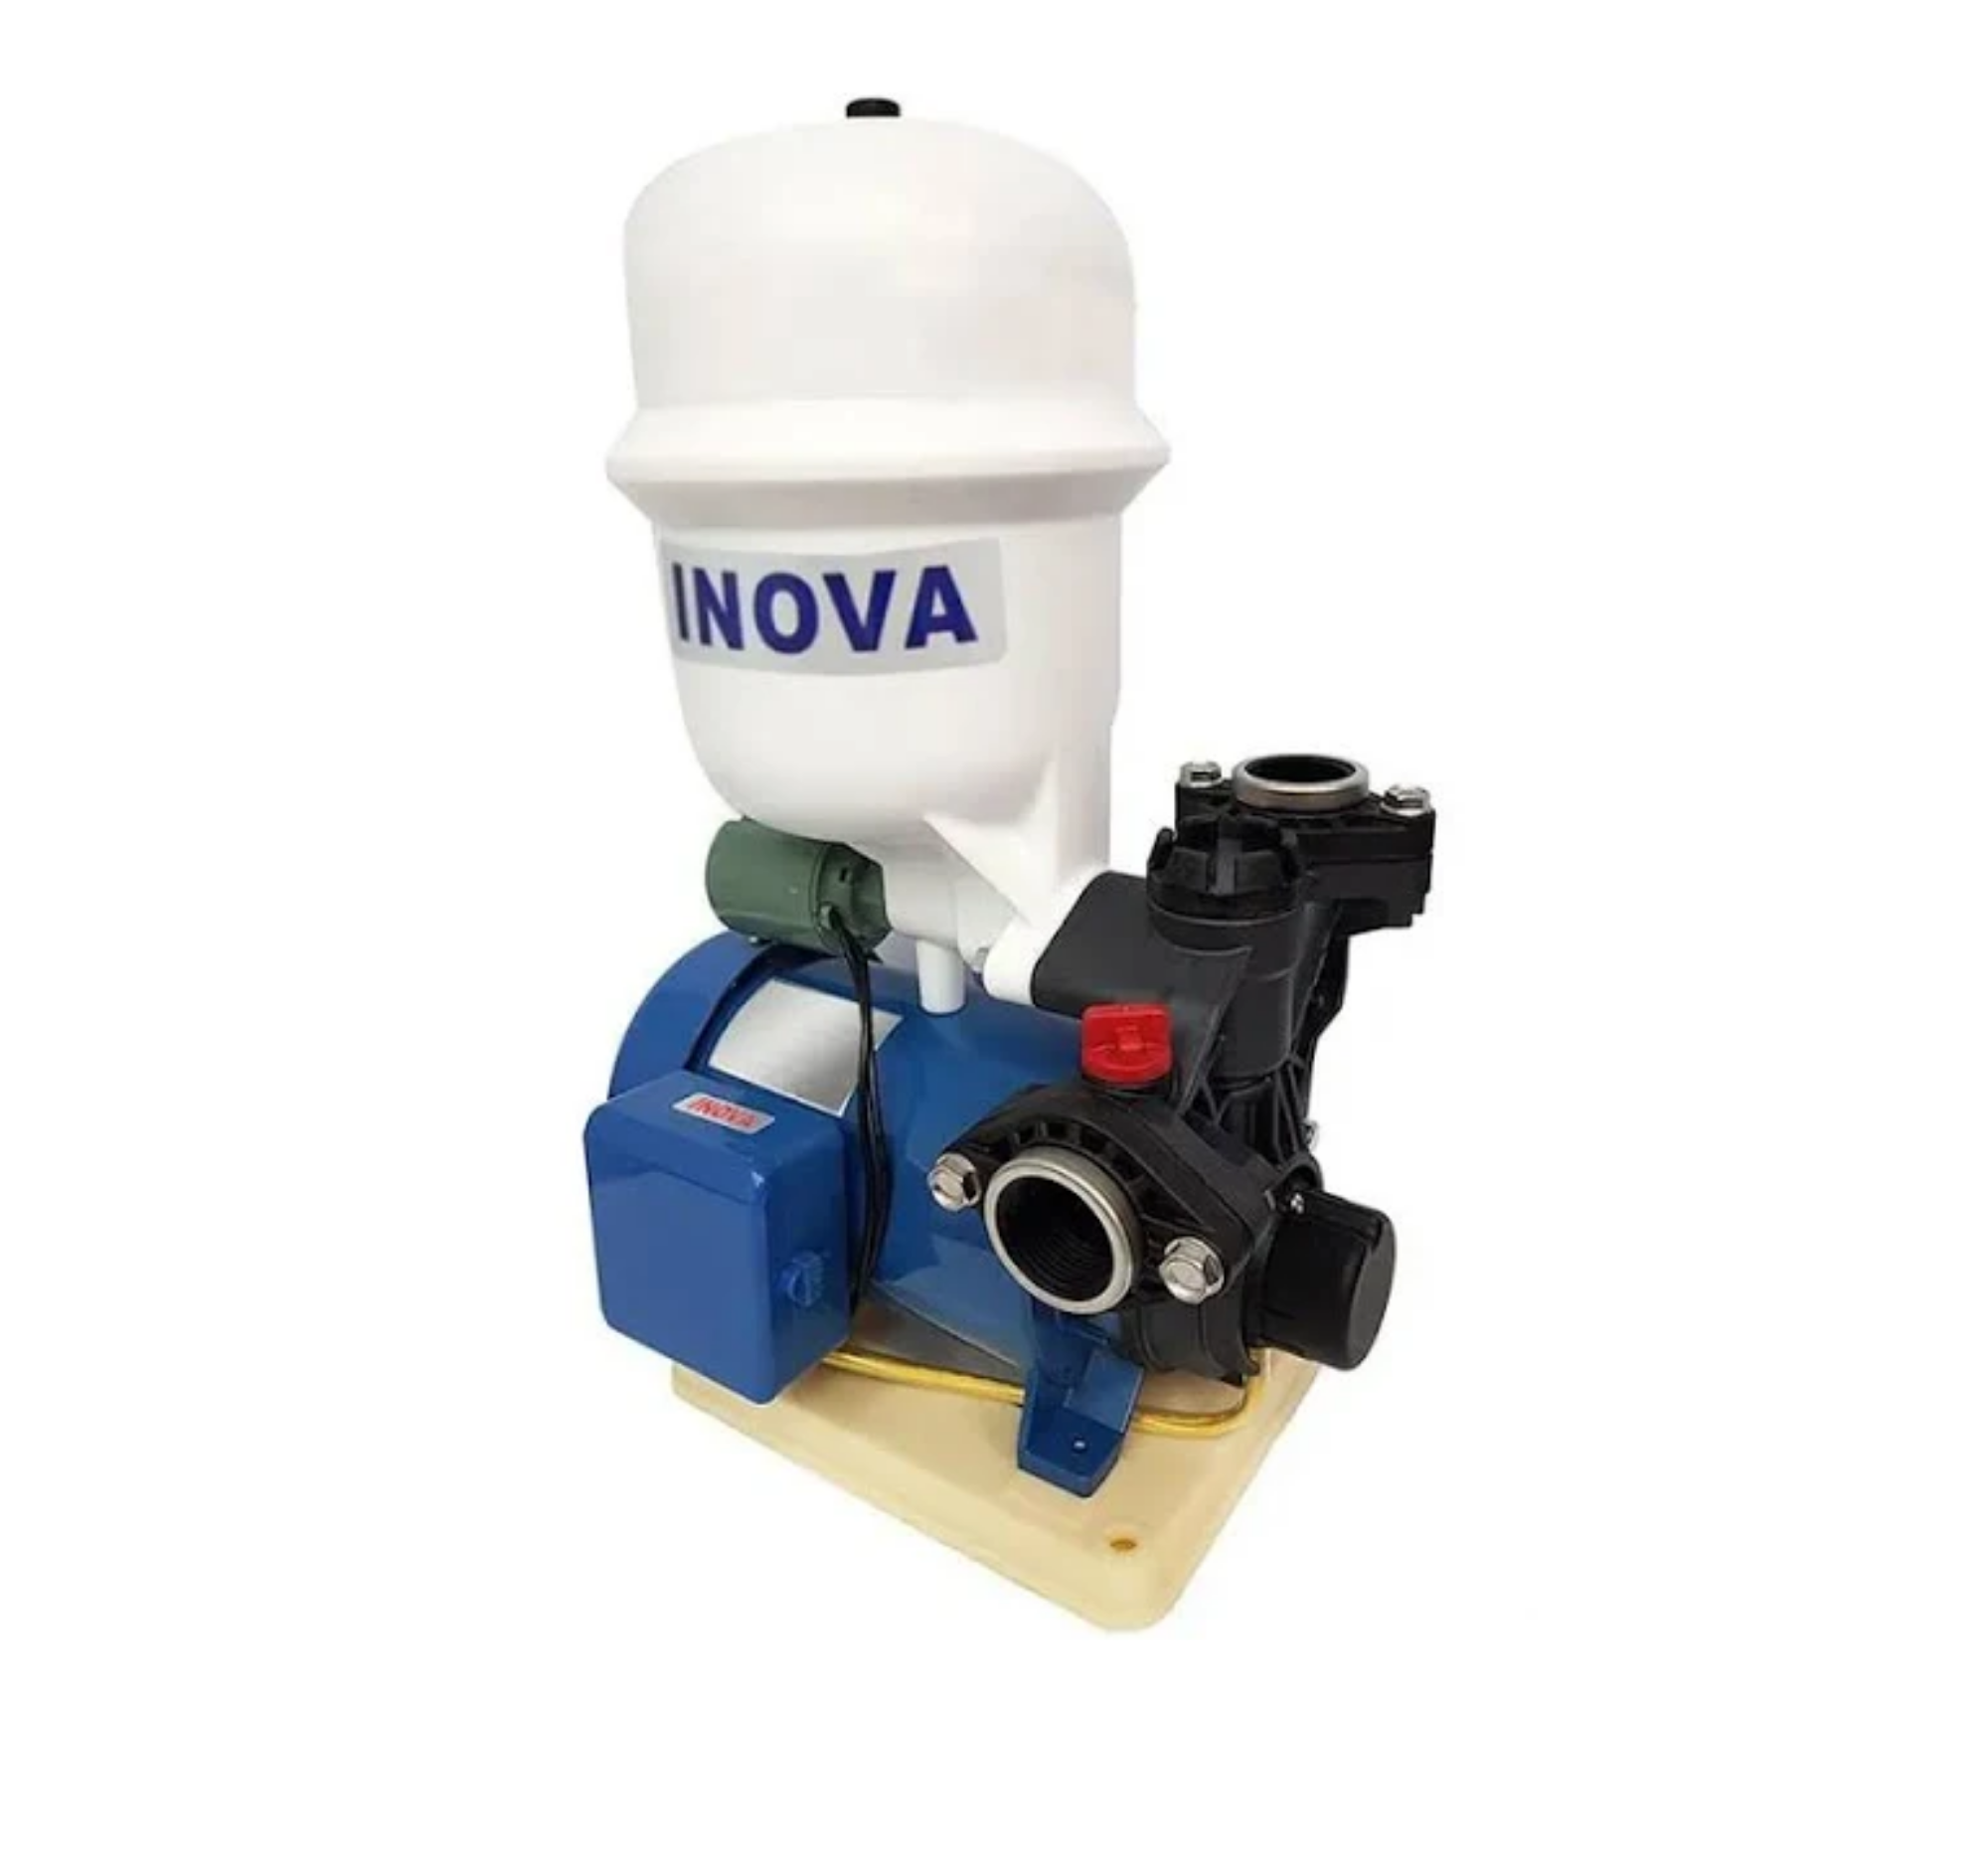 Pressurizador de Água Inova -gp 280 Ps -bivolt - Termoplástica de Alta Performance - com Pressostato - 2